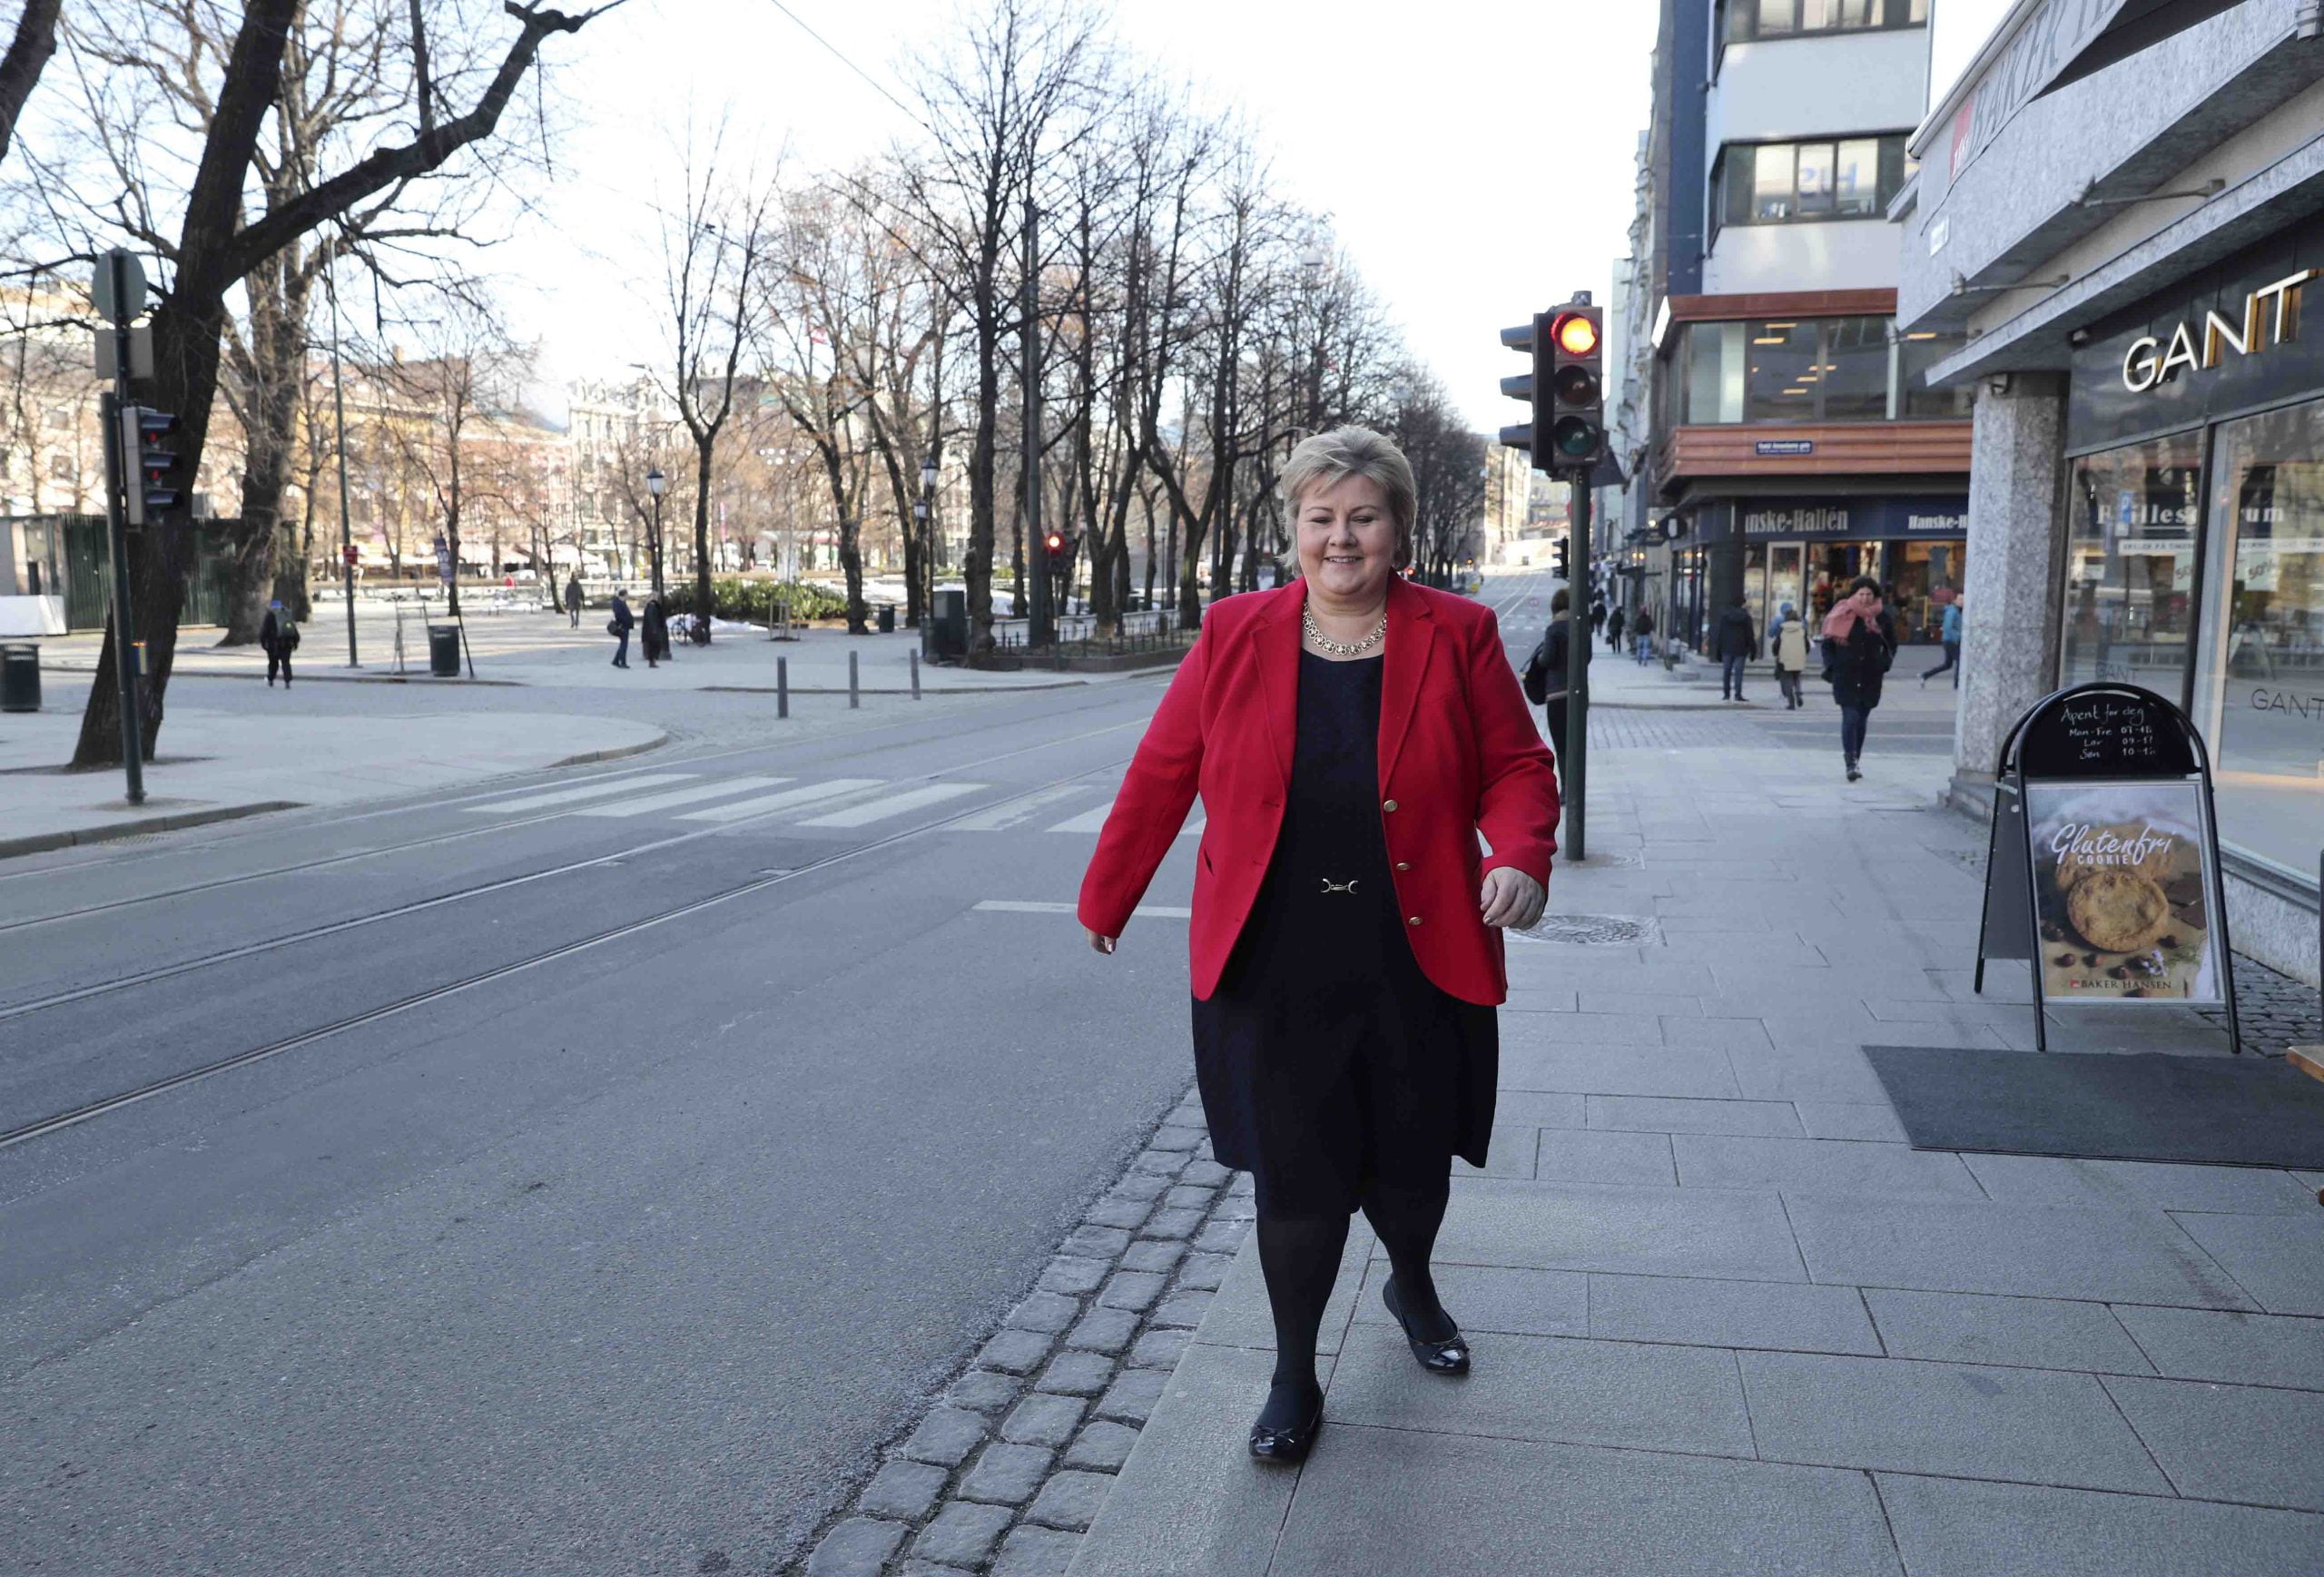 Erna Solberg ne votera pas contre les autres partis sur certaines questions - 3